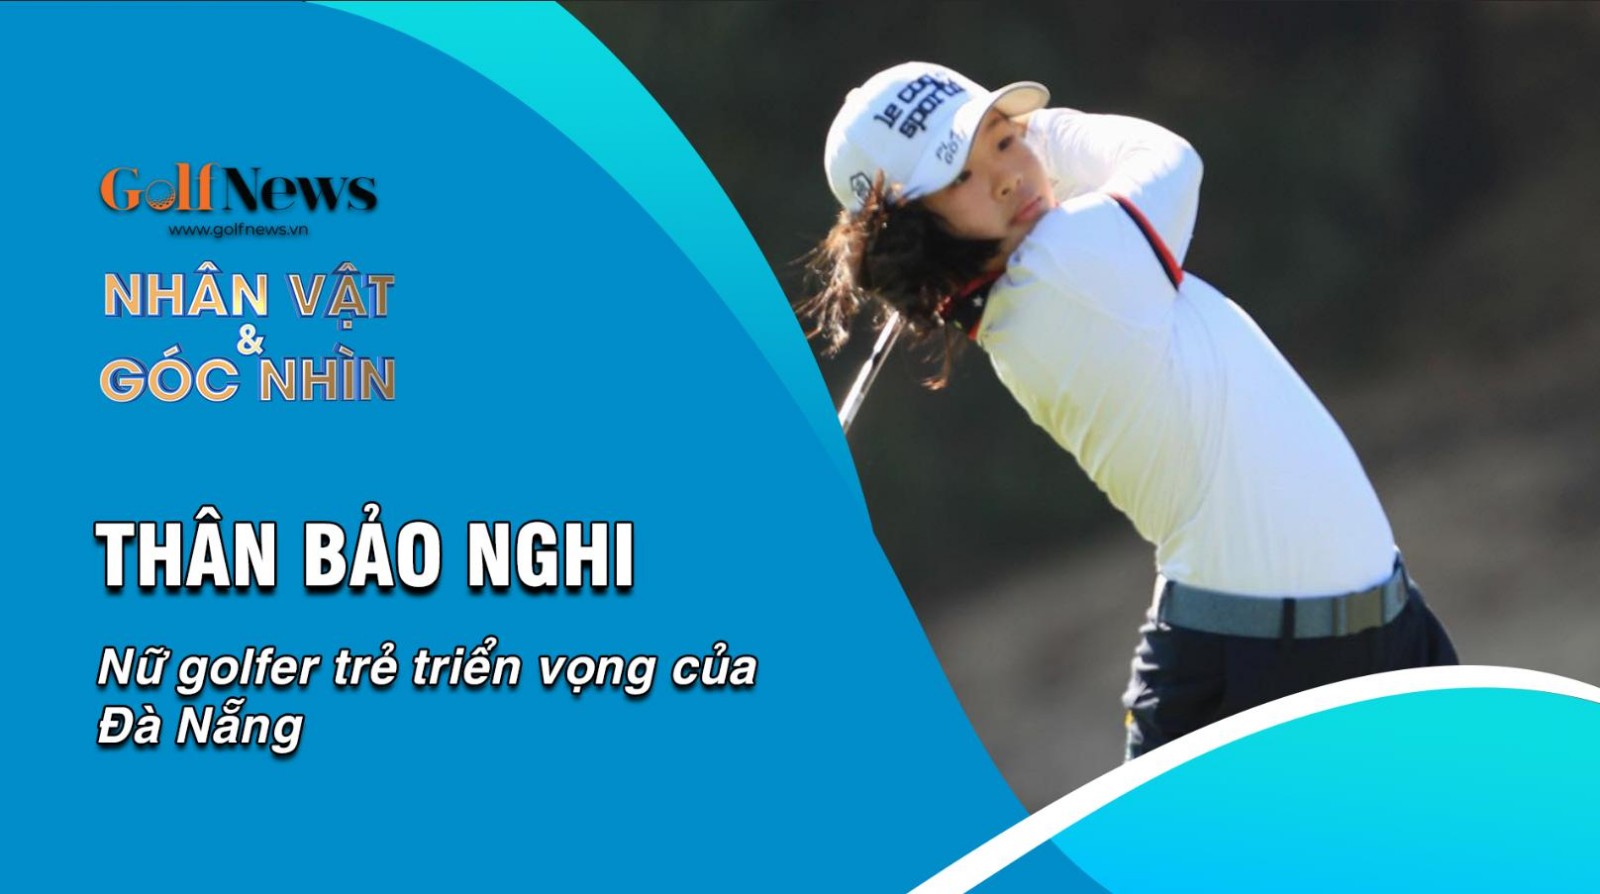 Thân Bảo Nghi – Nữ golfer trẻ triển vọng của Đà Nẵng